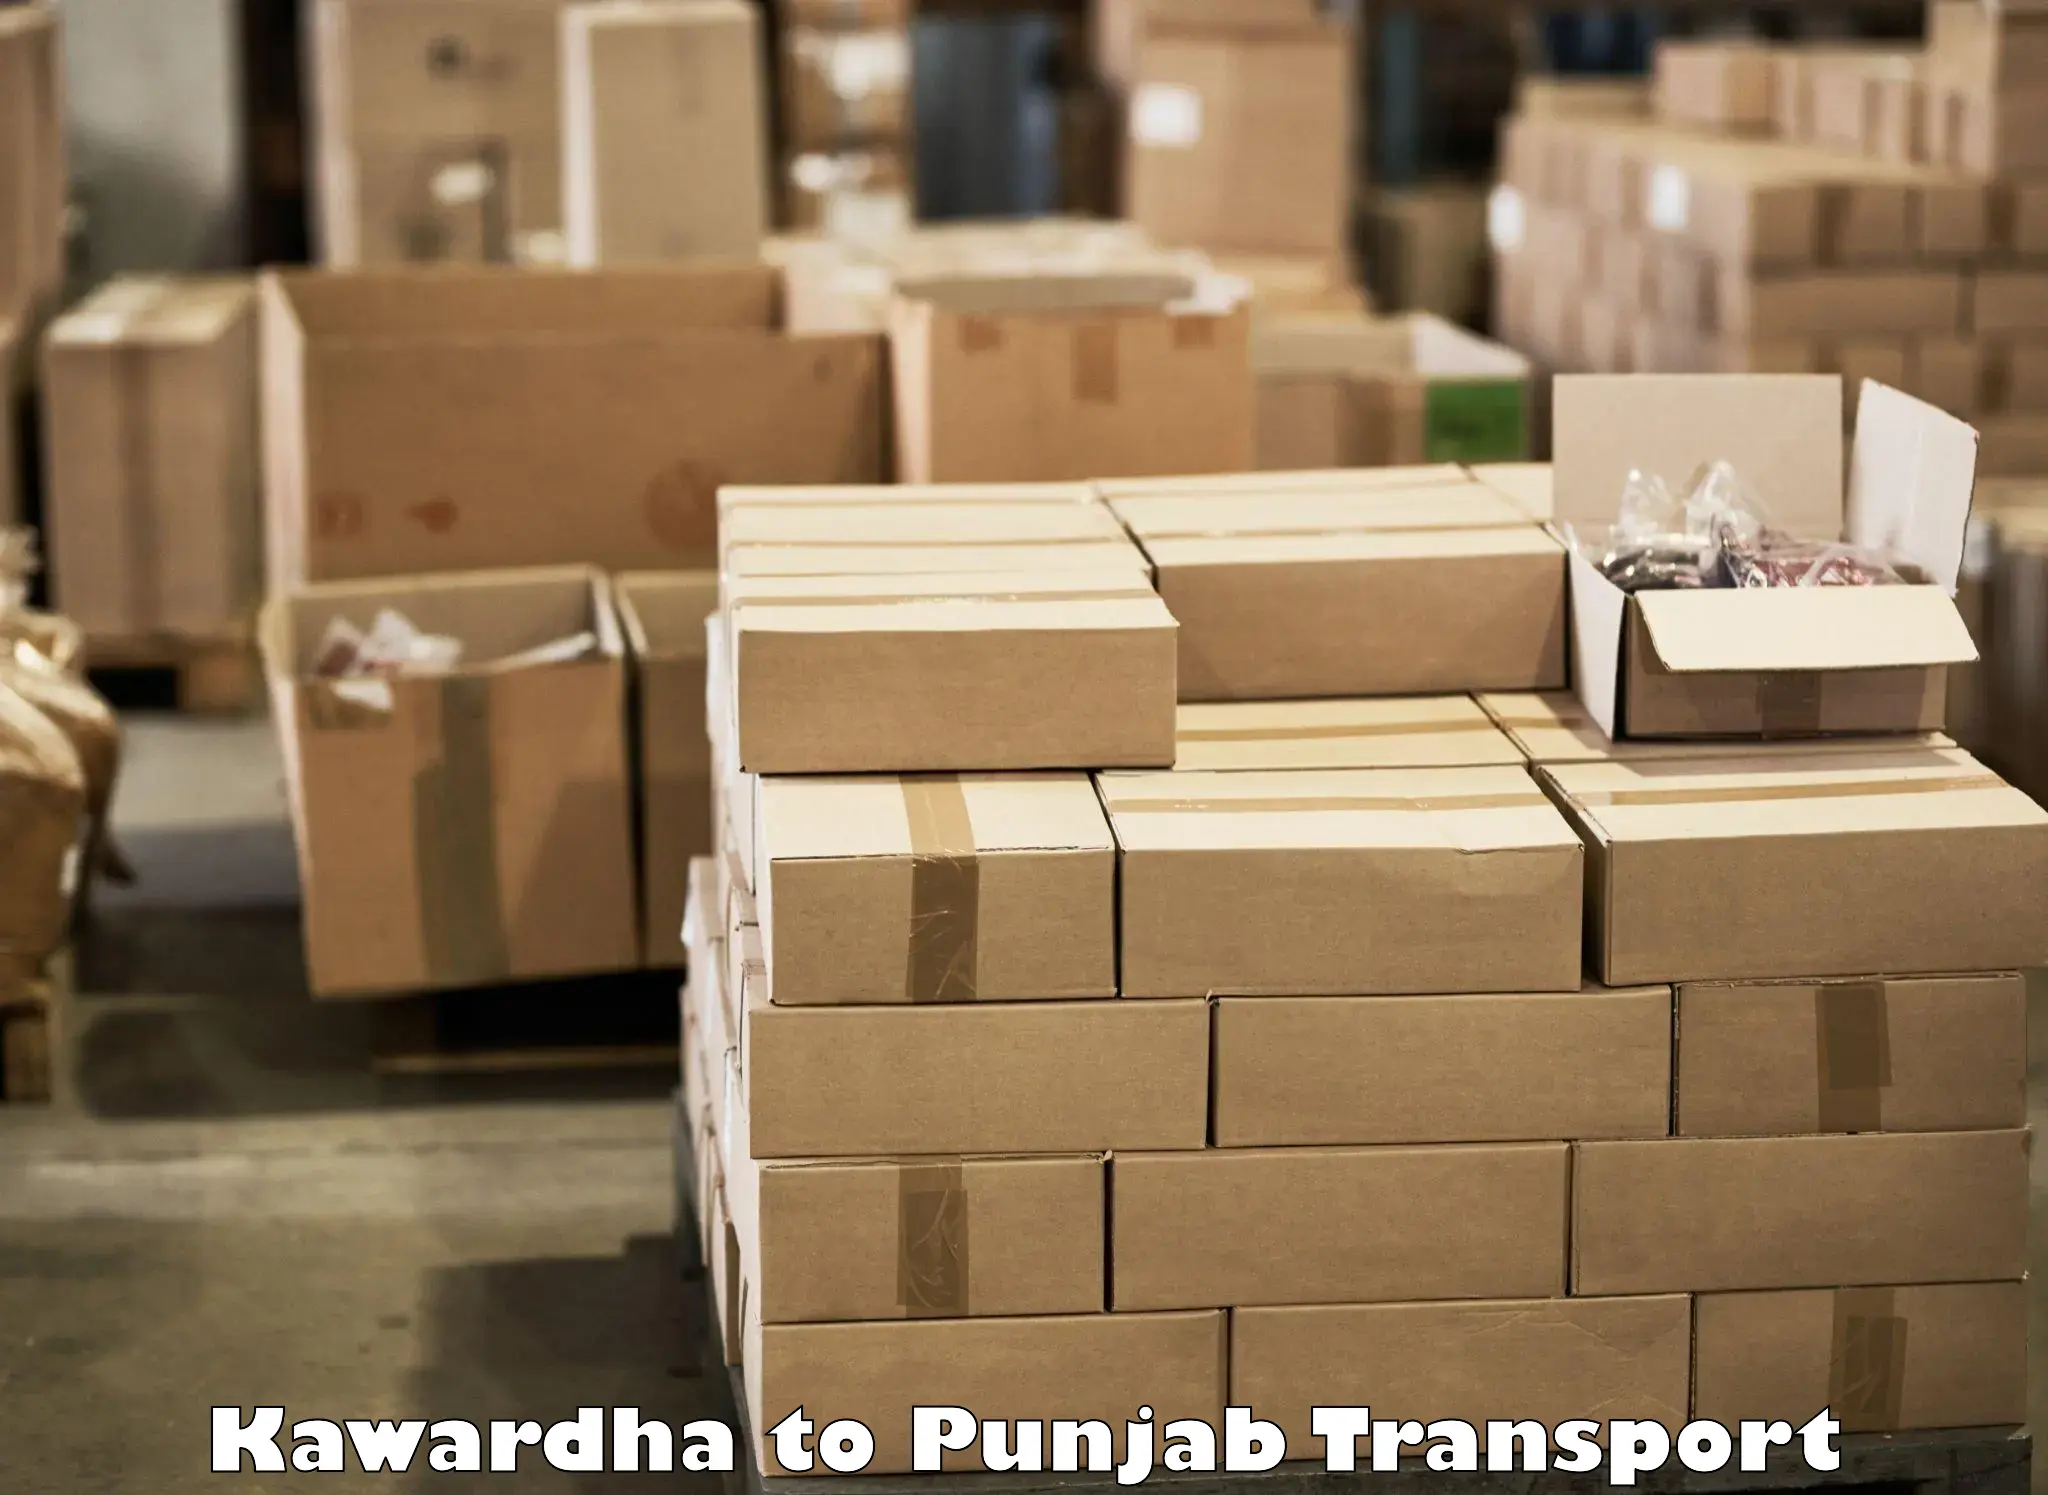 Two wheeler parcel service Kawardha to Punjab